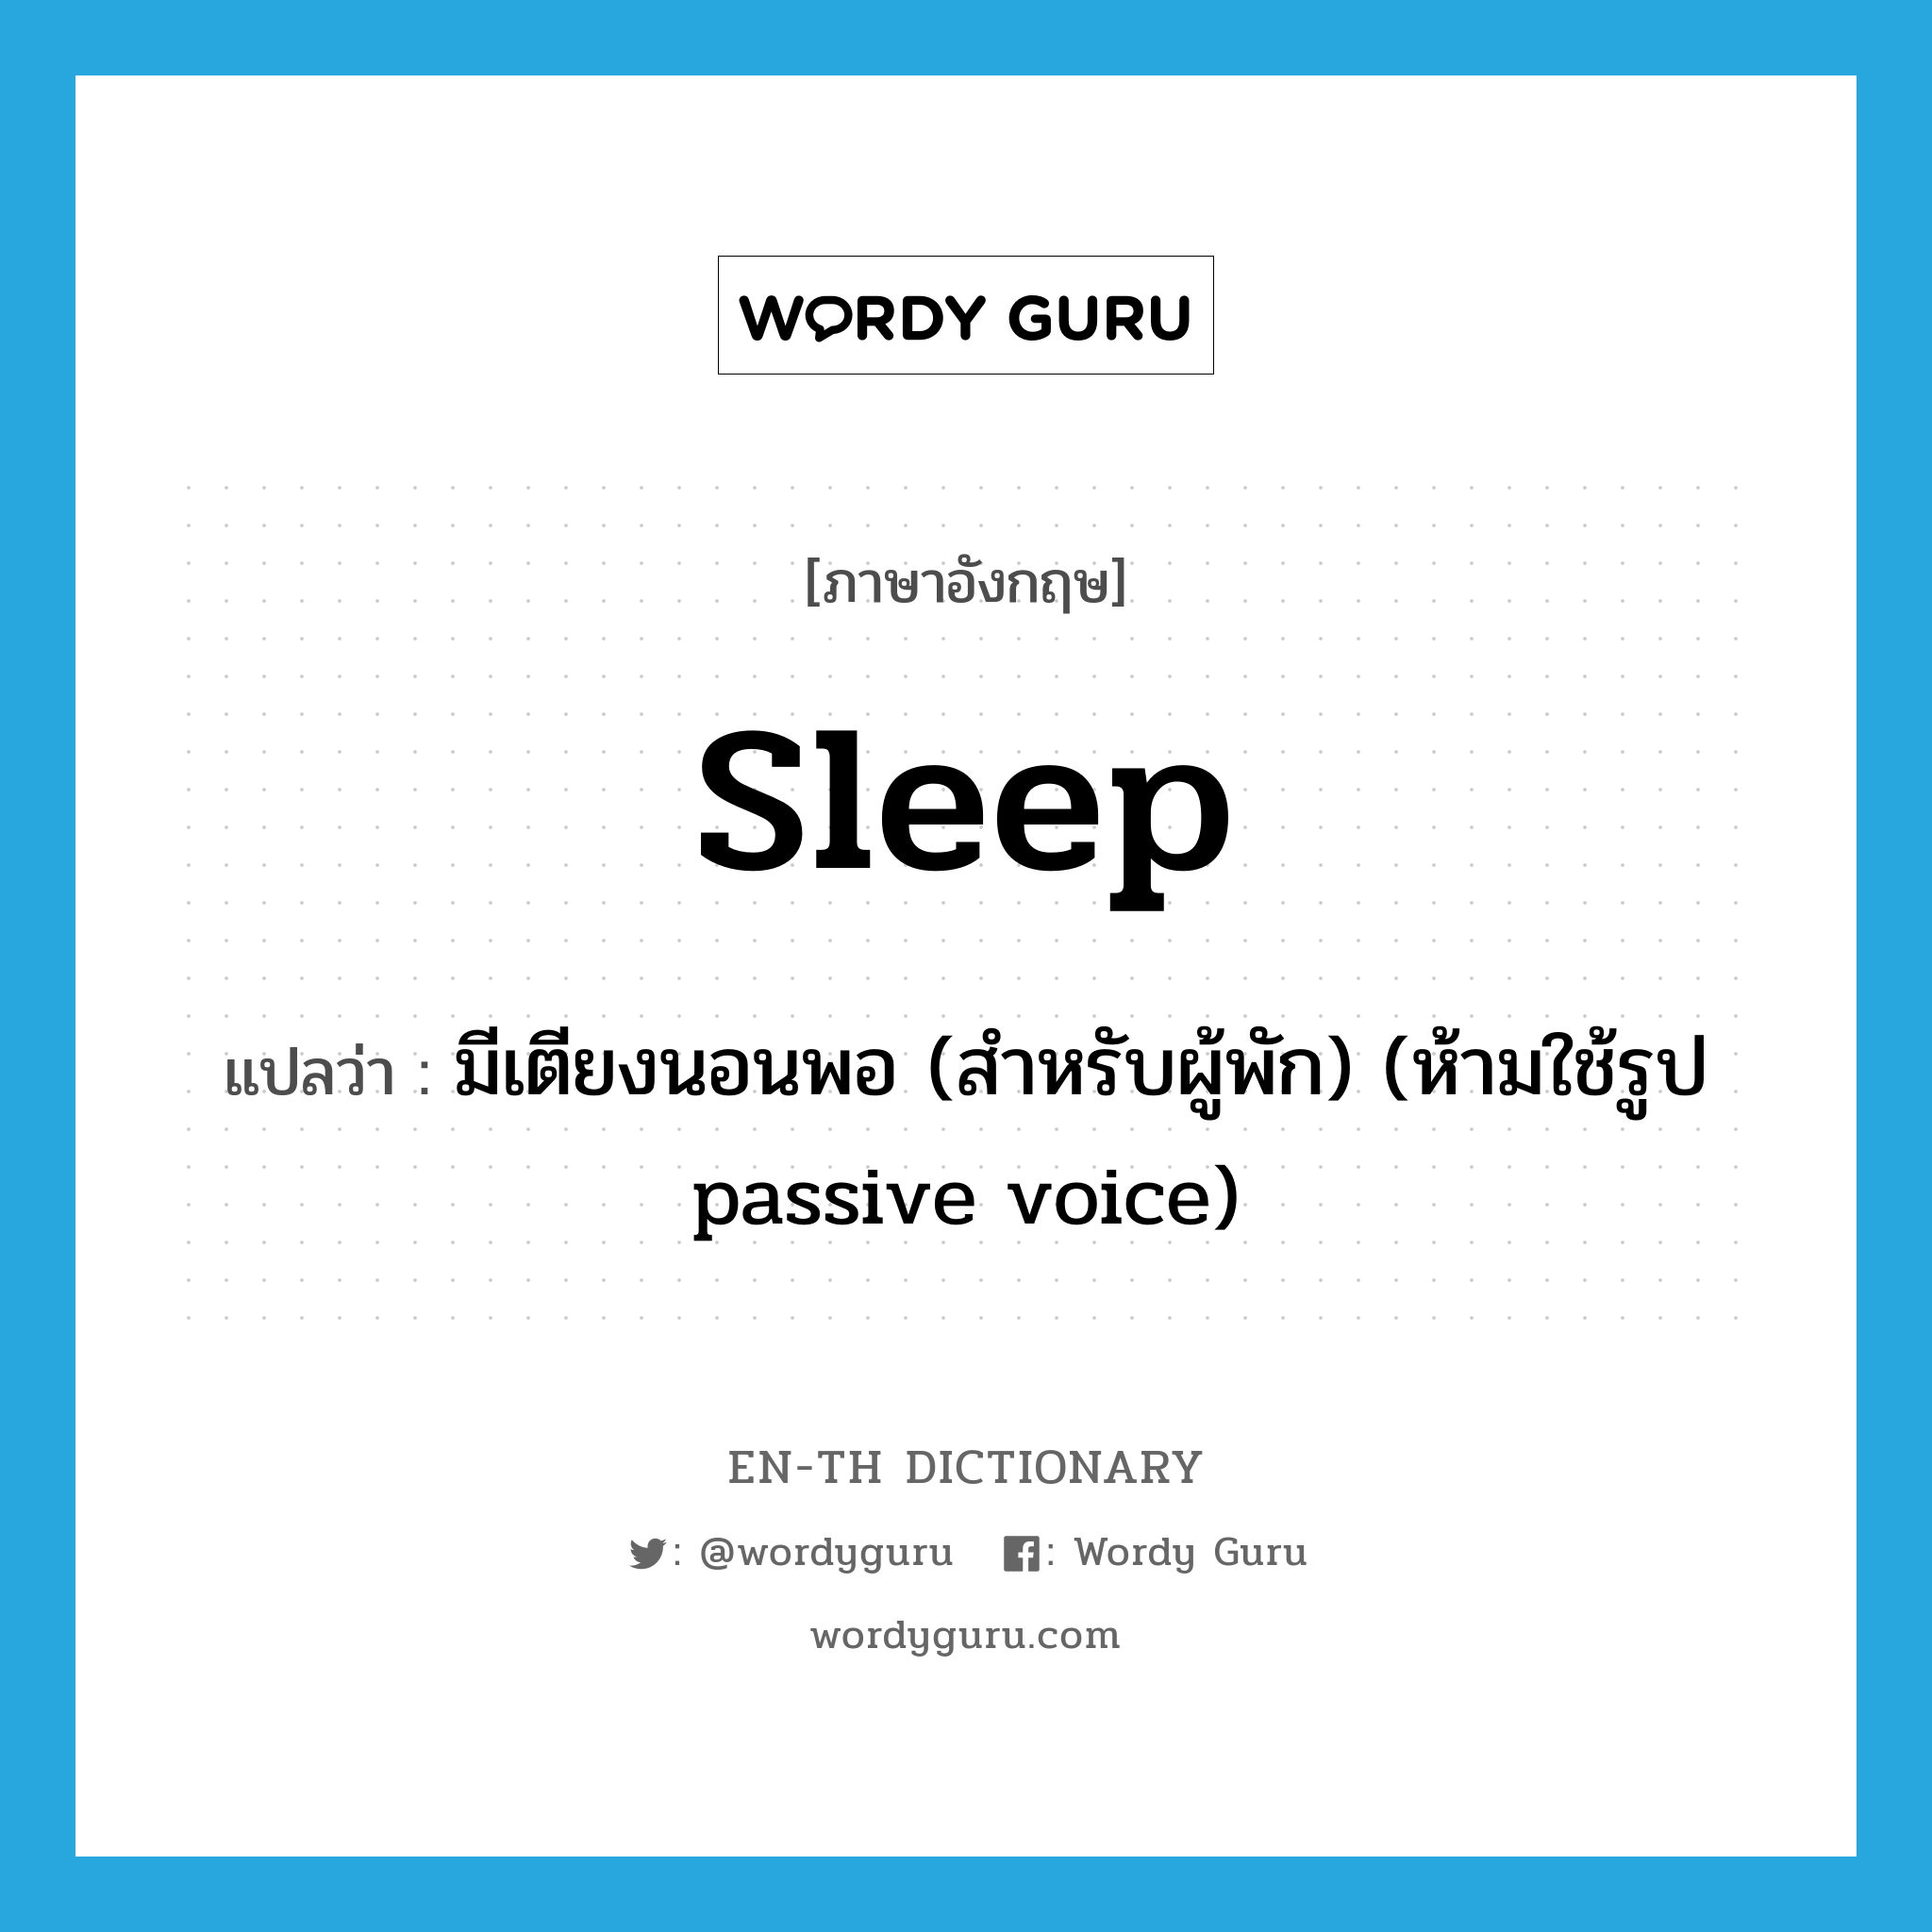 มีเตียงนอนพอ (สำหรับผู้พัก) (ห้ามใช้รูป passive voice) ภาษาอังกฤษ?, คำศัพท์ภาษาอังกฤษ มีเตียงนอนพอ (สำหรับผู้พัก) (ห้ามใช้รูป passive voice) แปลว่า sleep ประเภท VT หมวด VT